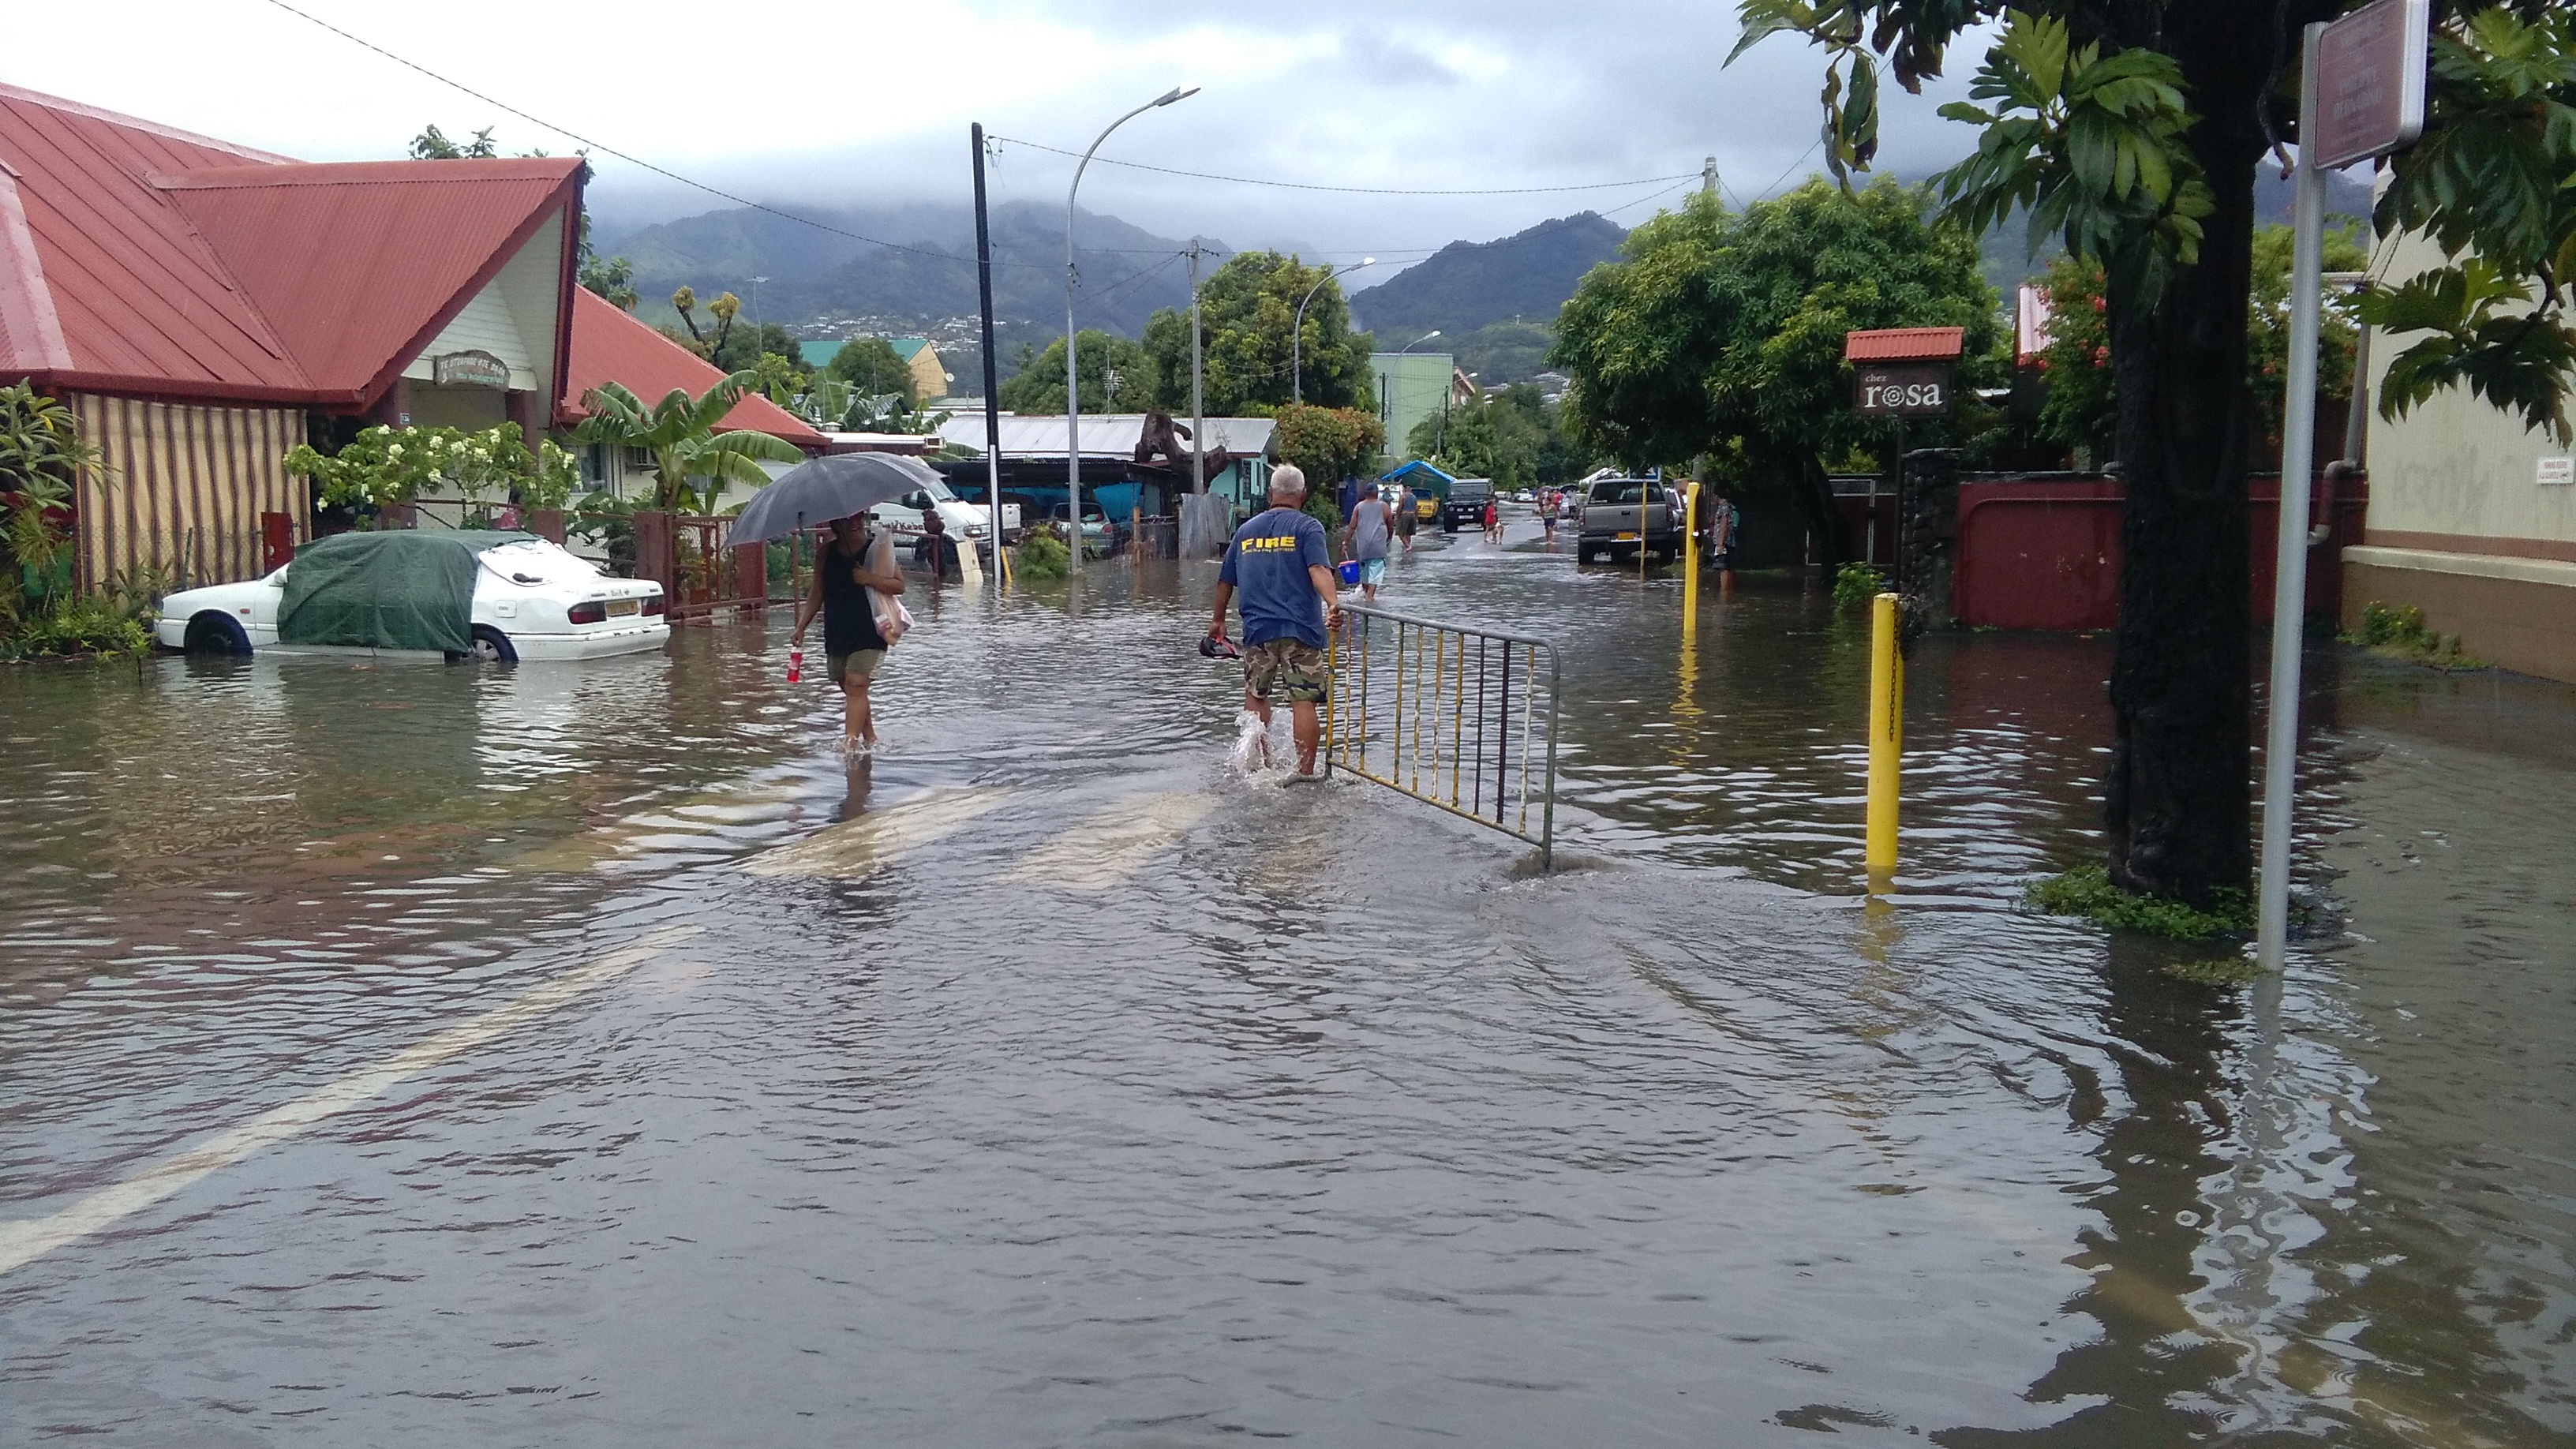 Le quartier de Taunoa inondé après la crue de la Papeava, vendredi matin, à Papeete.